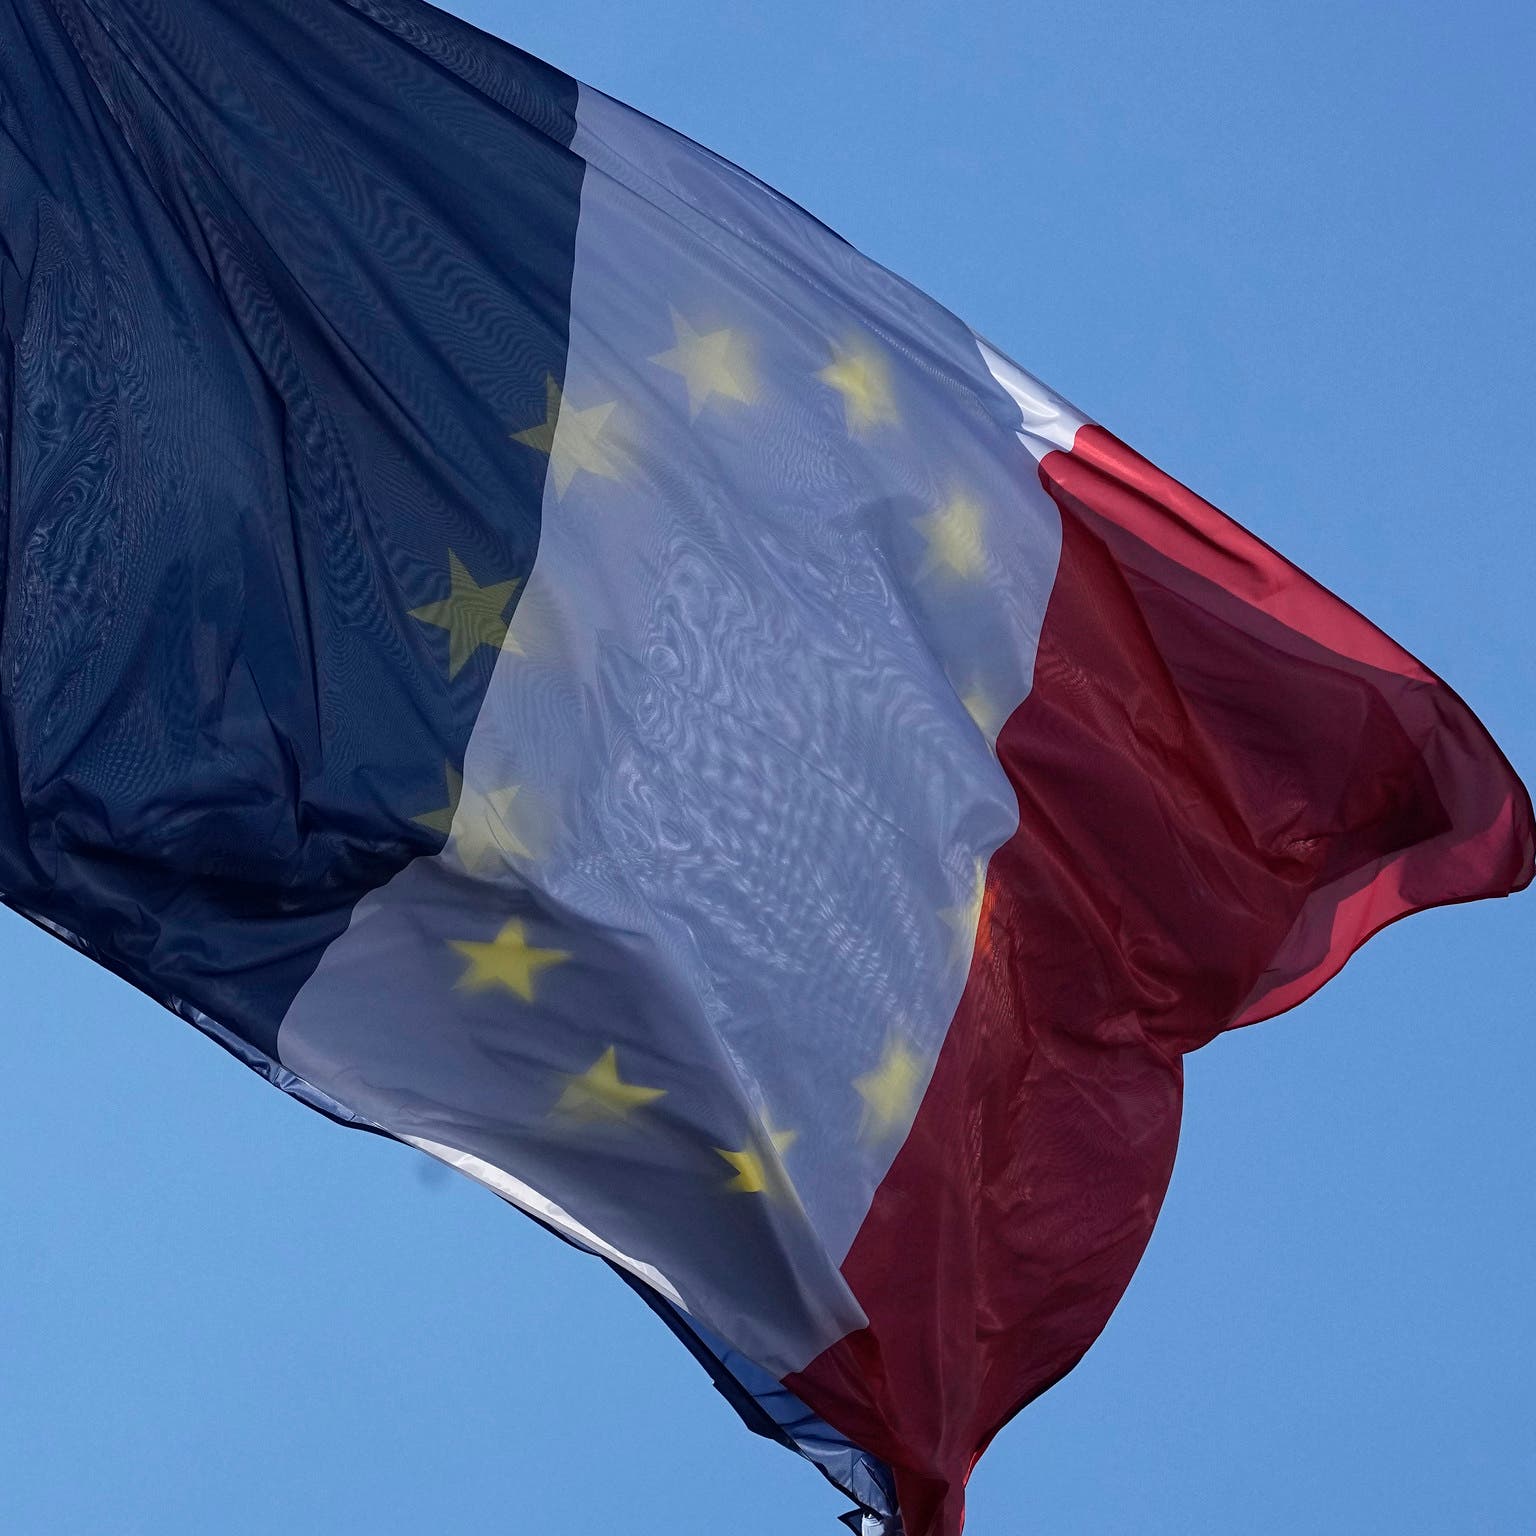 رسمان مسيئان لأوروبا نشرتهما سفارة روسيا يغضبان فرنسا